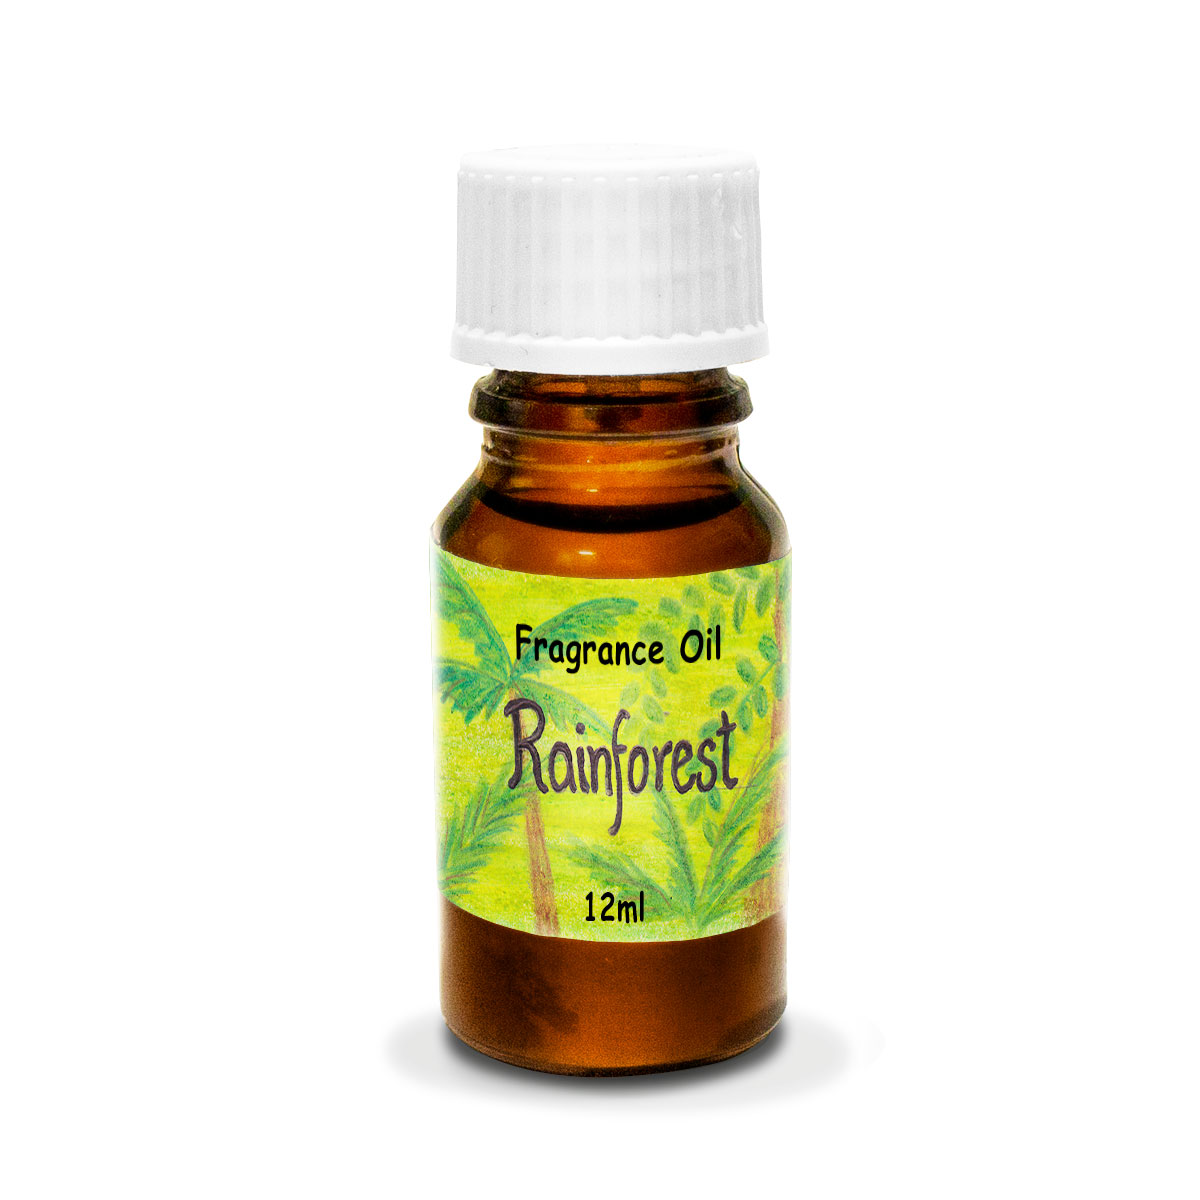 Rainforest - Fragrance Oil